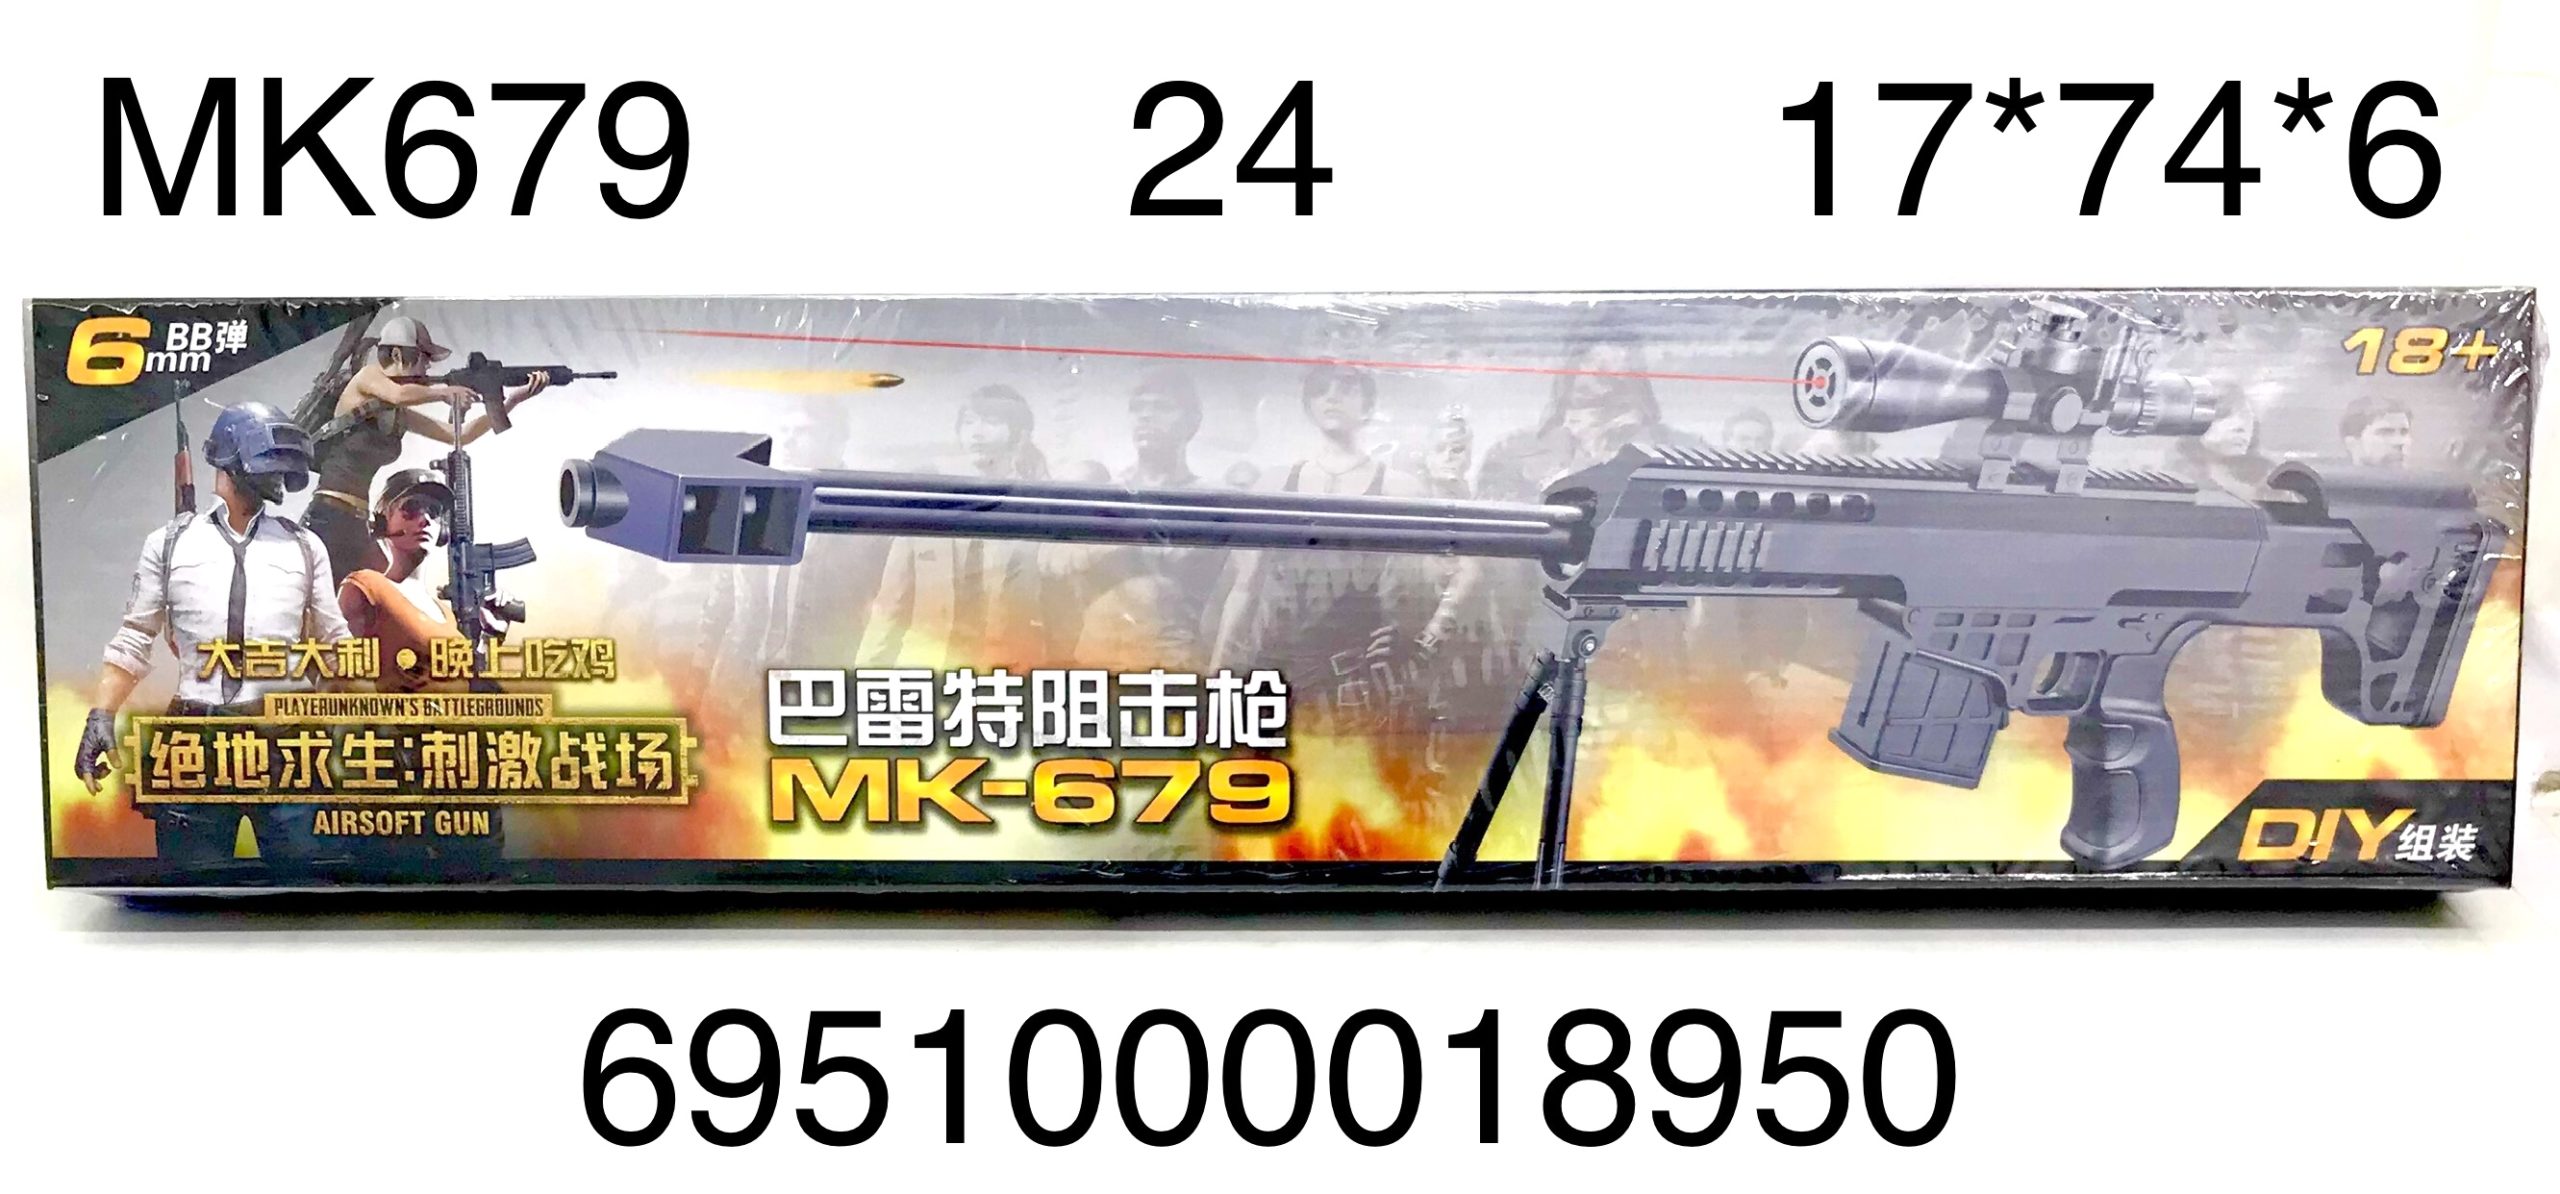 Оружие МК679 с лазерным прицелом - Самара 